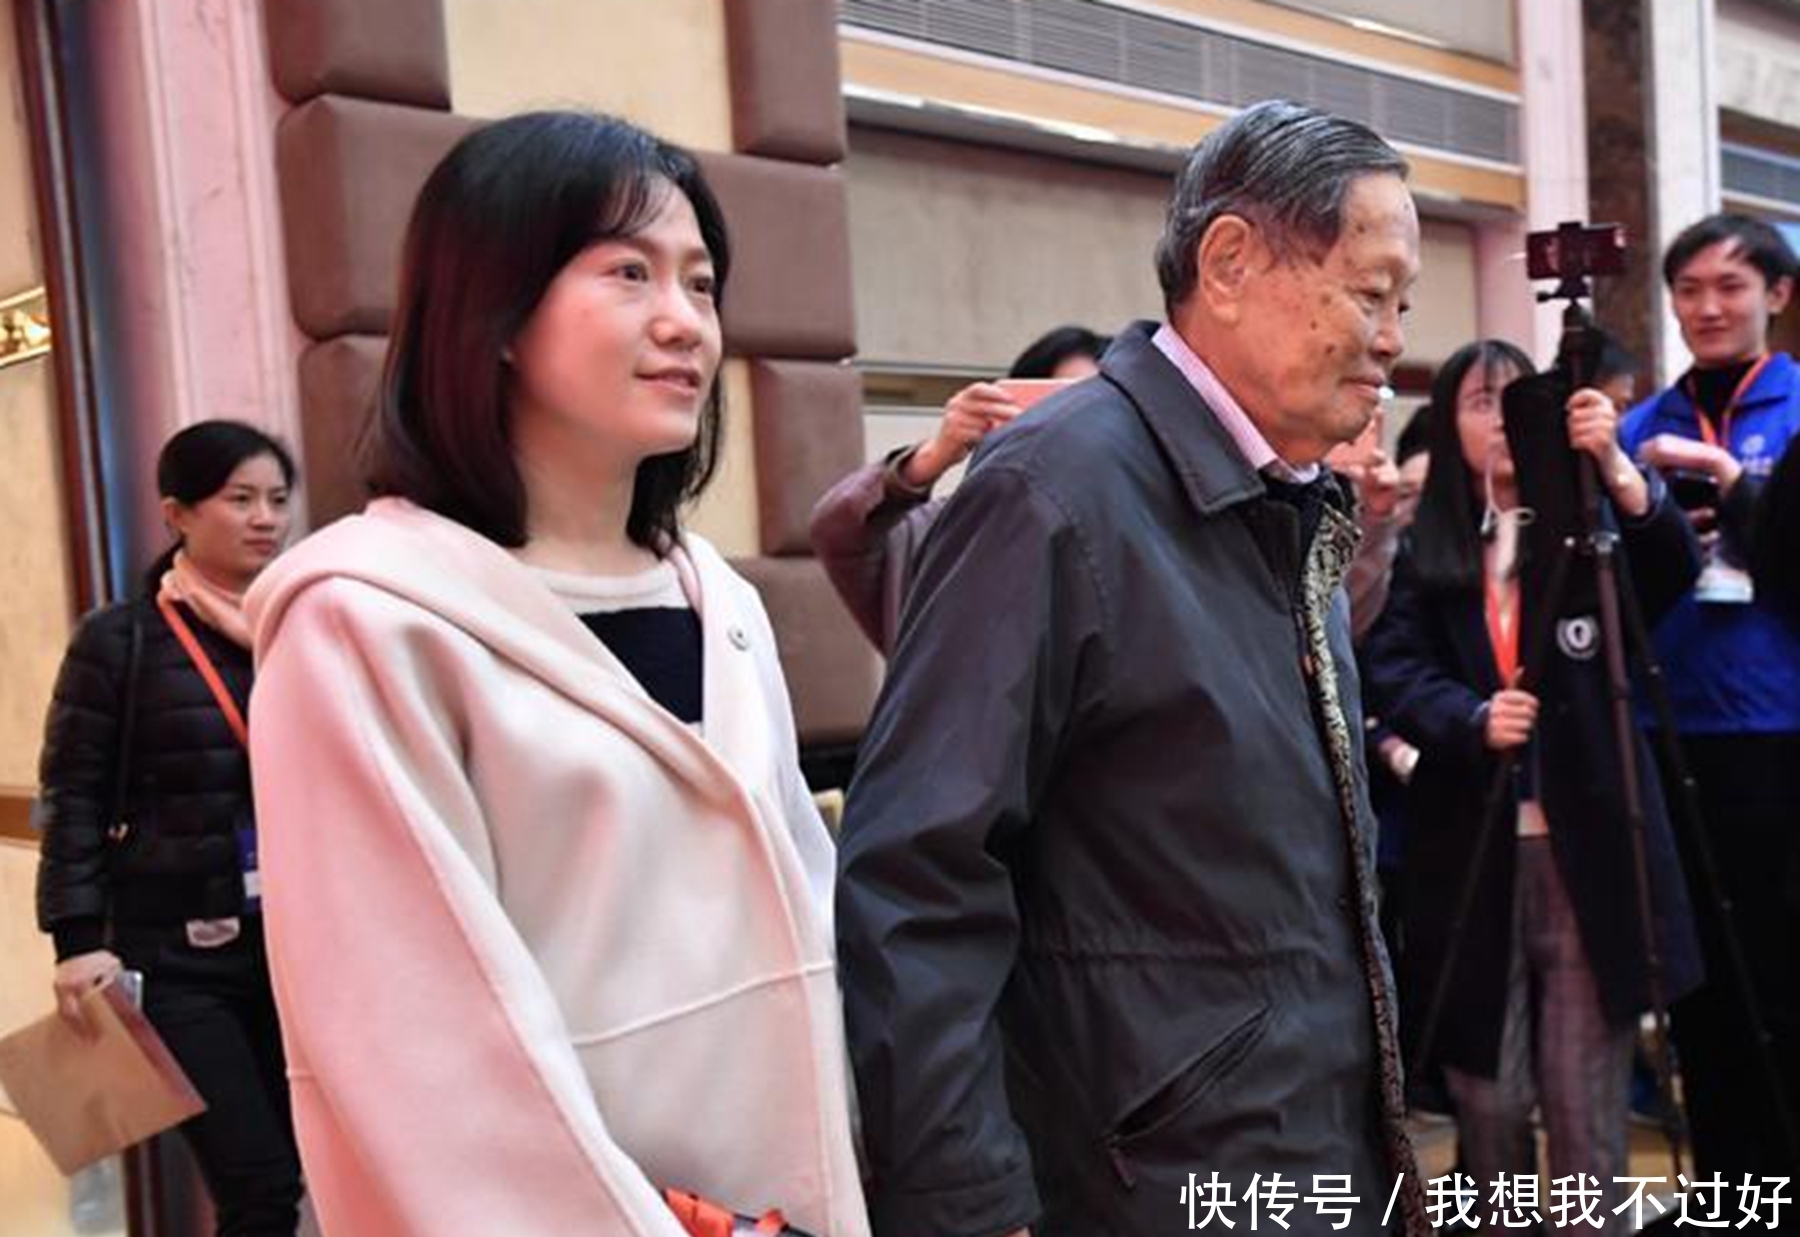 相伴17年,98岁杨振宁允许翁帆改嫁,遗产却